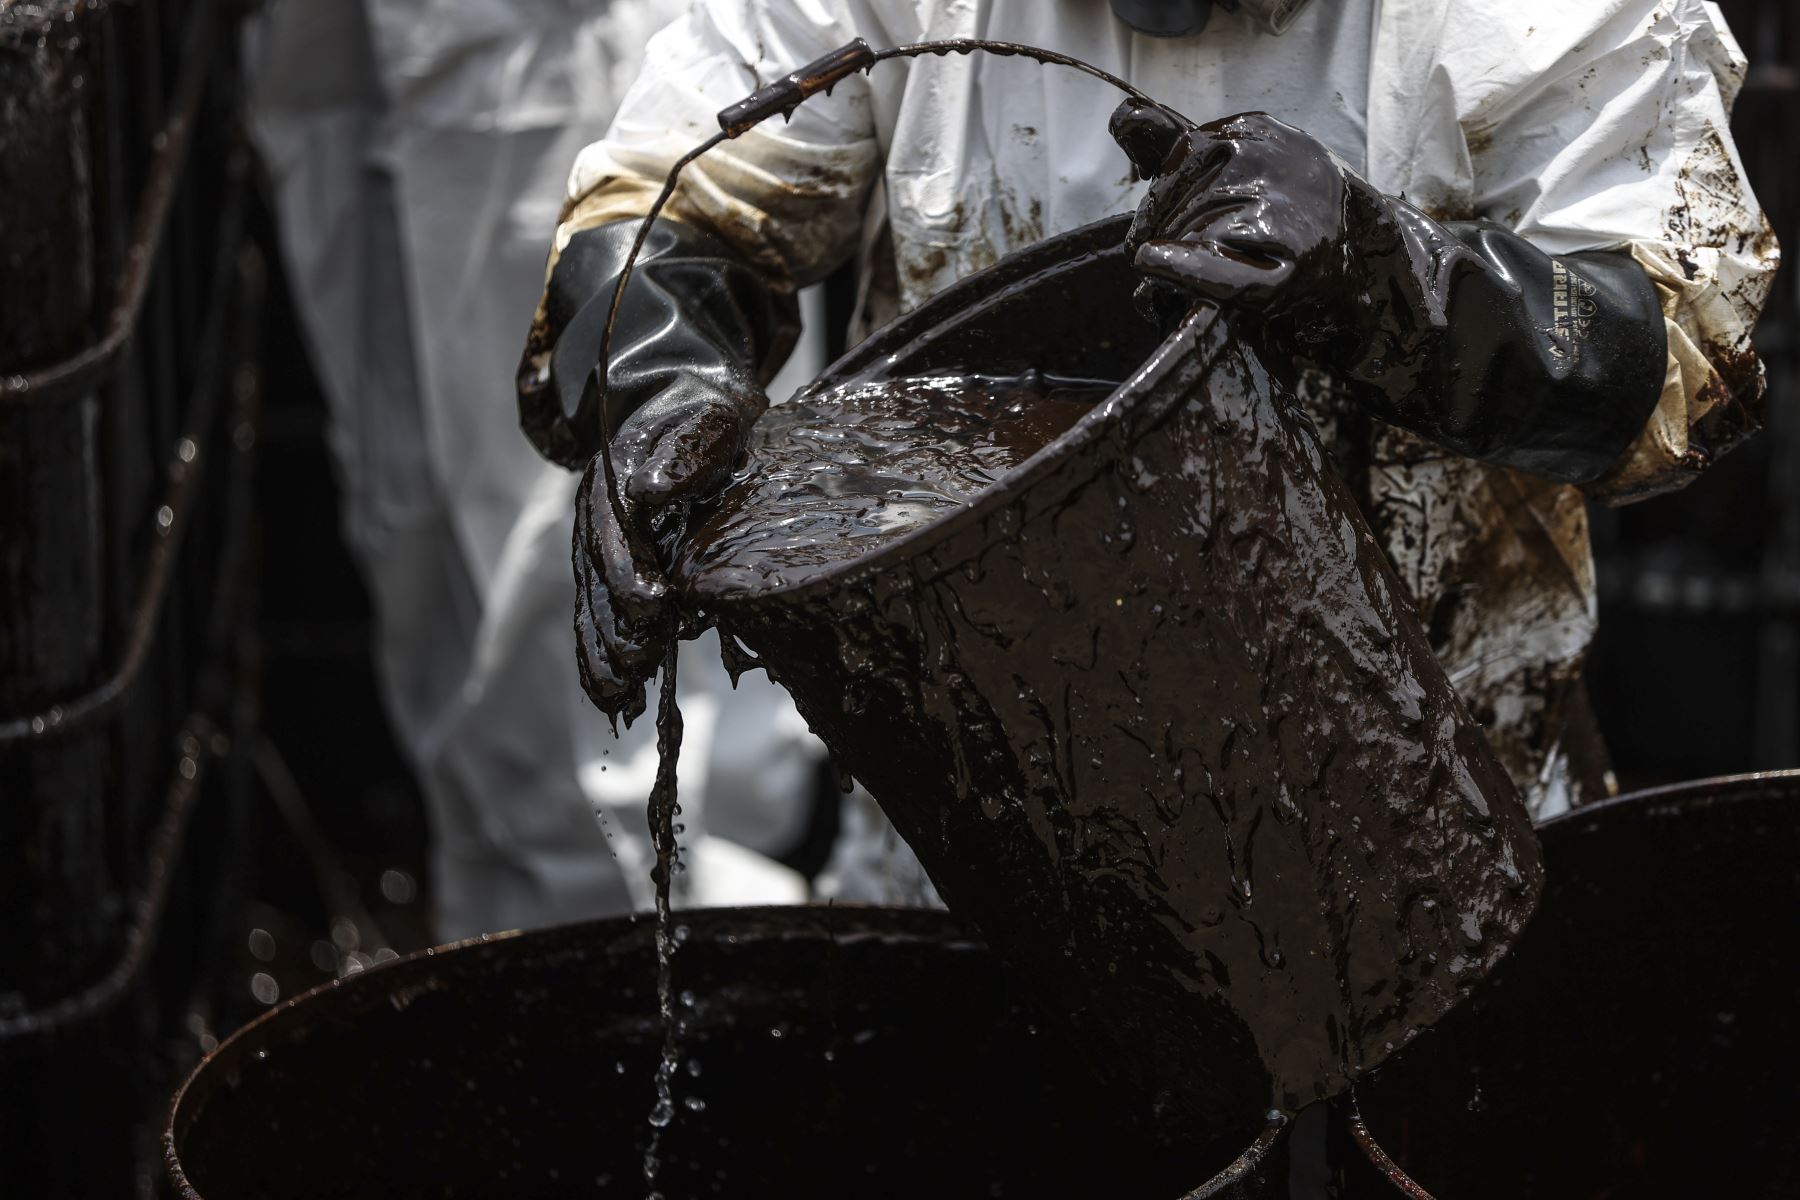 Los obreros retiran el petróleo en baldes y lo depositan en cilindros de metal. Foto: ANDINA/Jhonel Rodríguez Robles